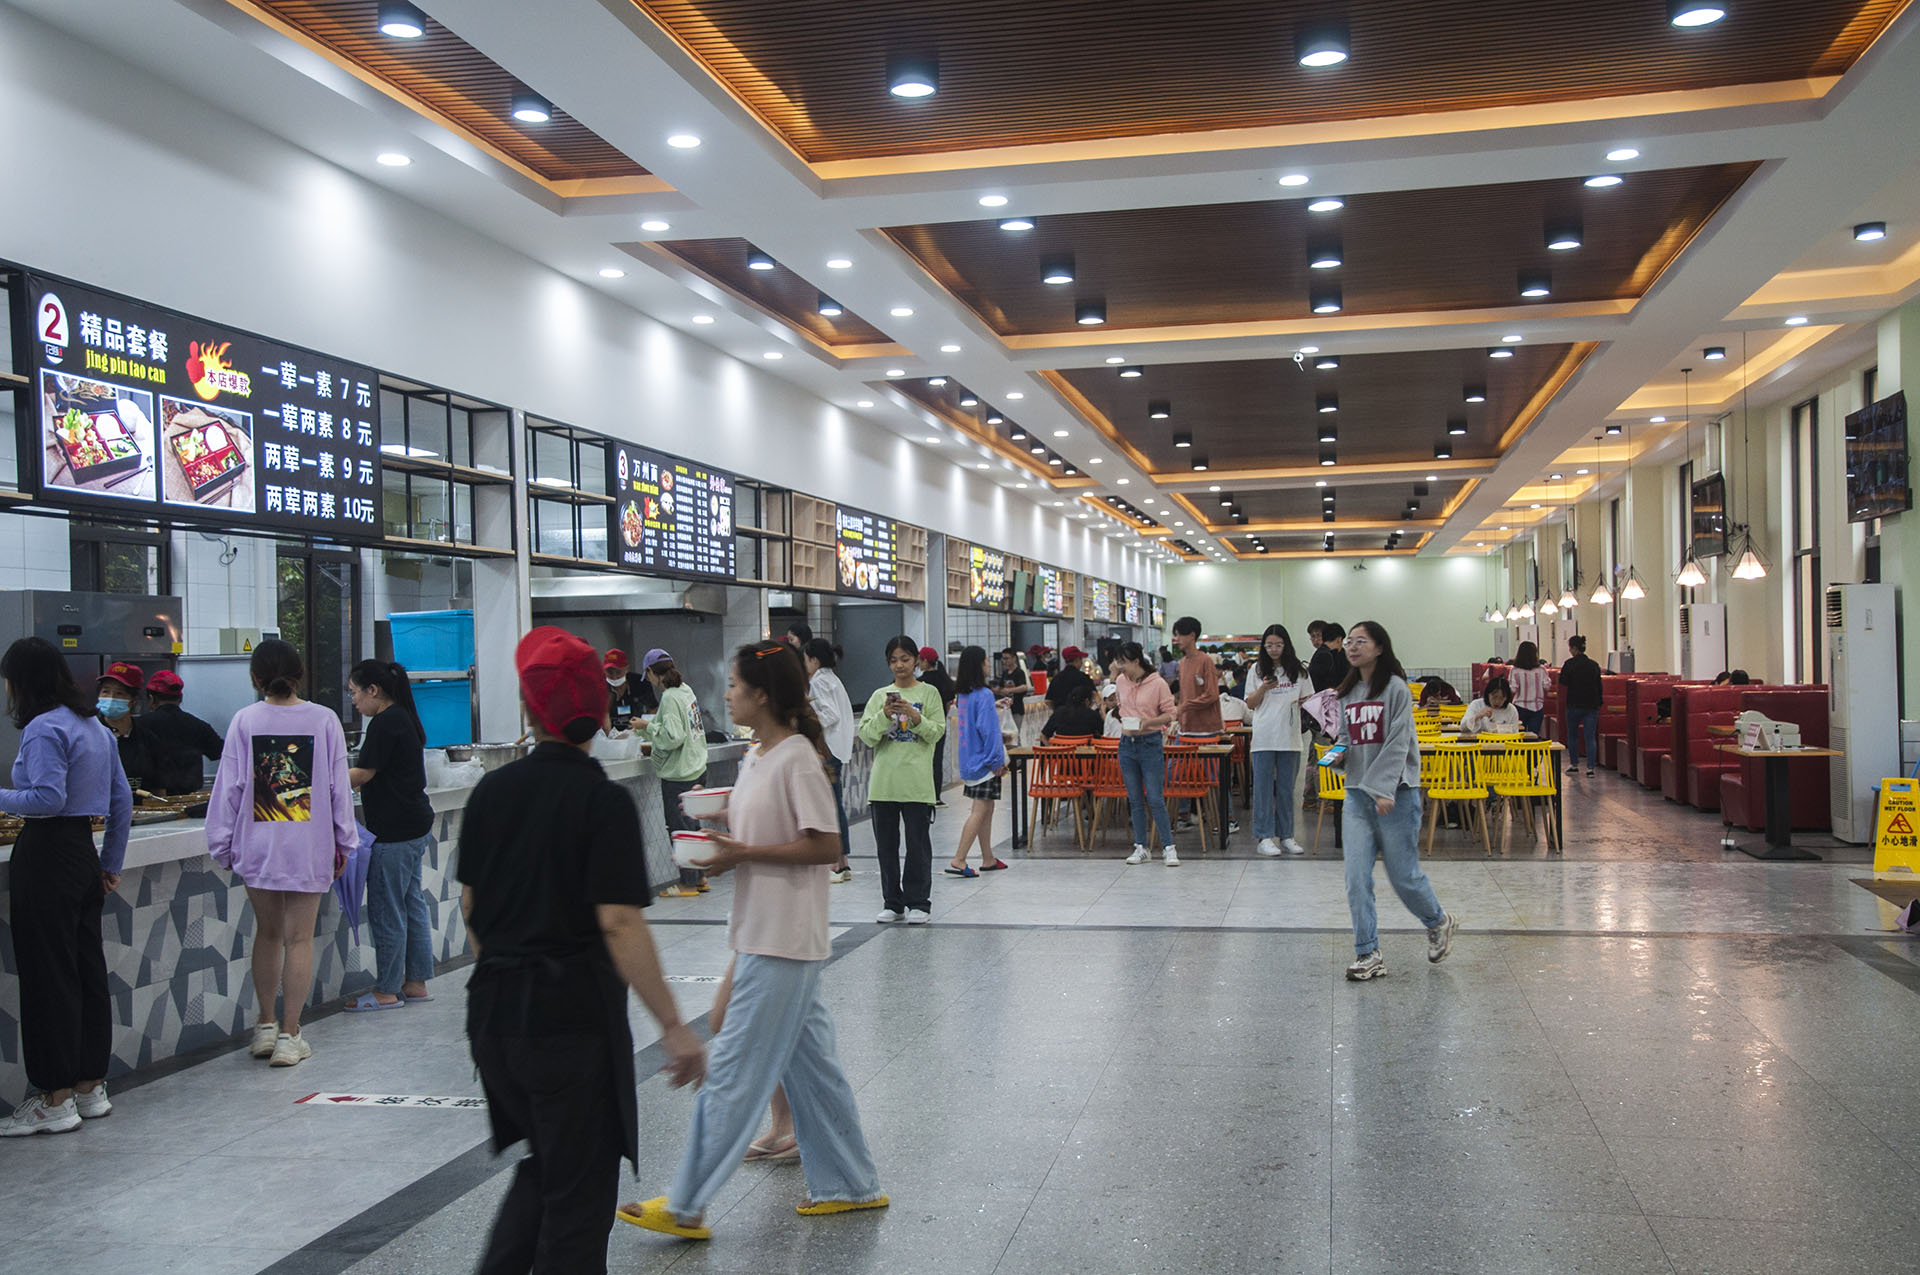 重庆人文科技学院慧园食堂、慧园特色餐厅